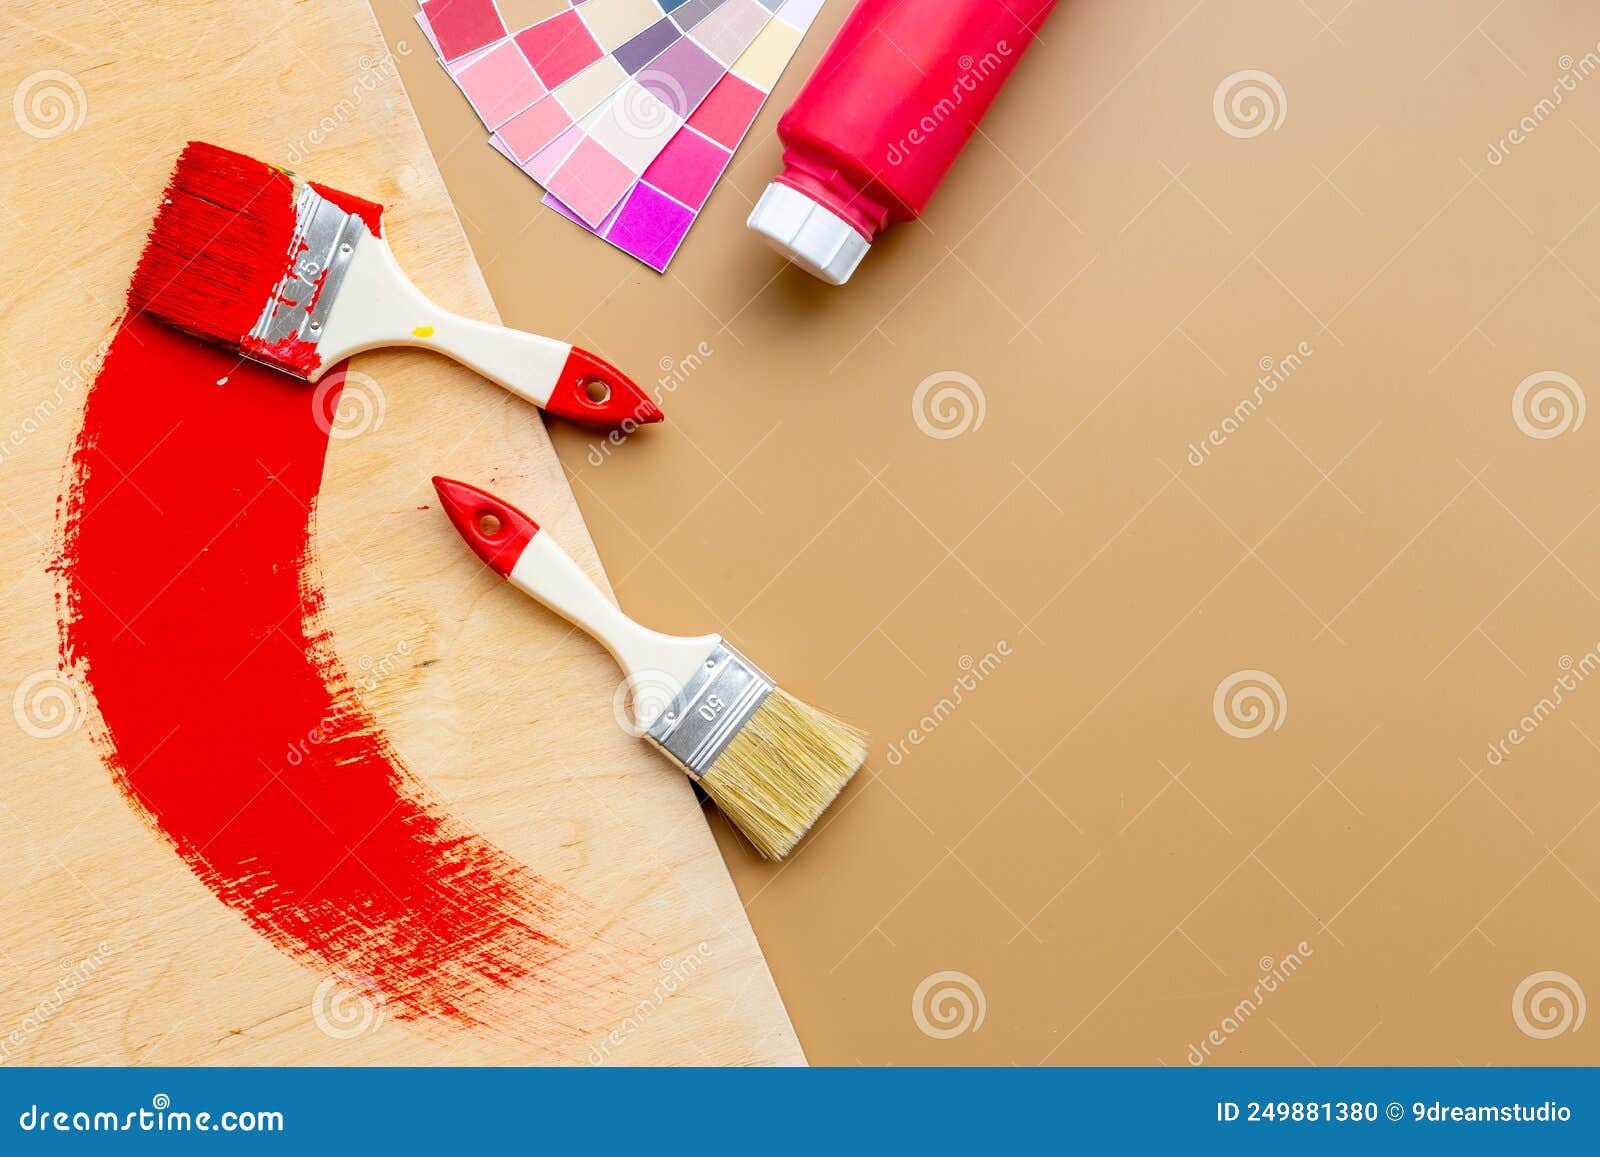 Pinceau Avec Peinture Colorée Pour La Rénovation De La Maison Et La Peinture  Murale Photo stock - Image du choix, rénovation: 249881380